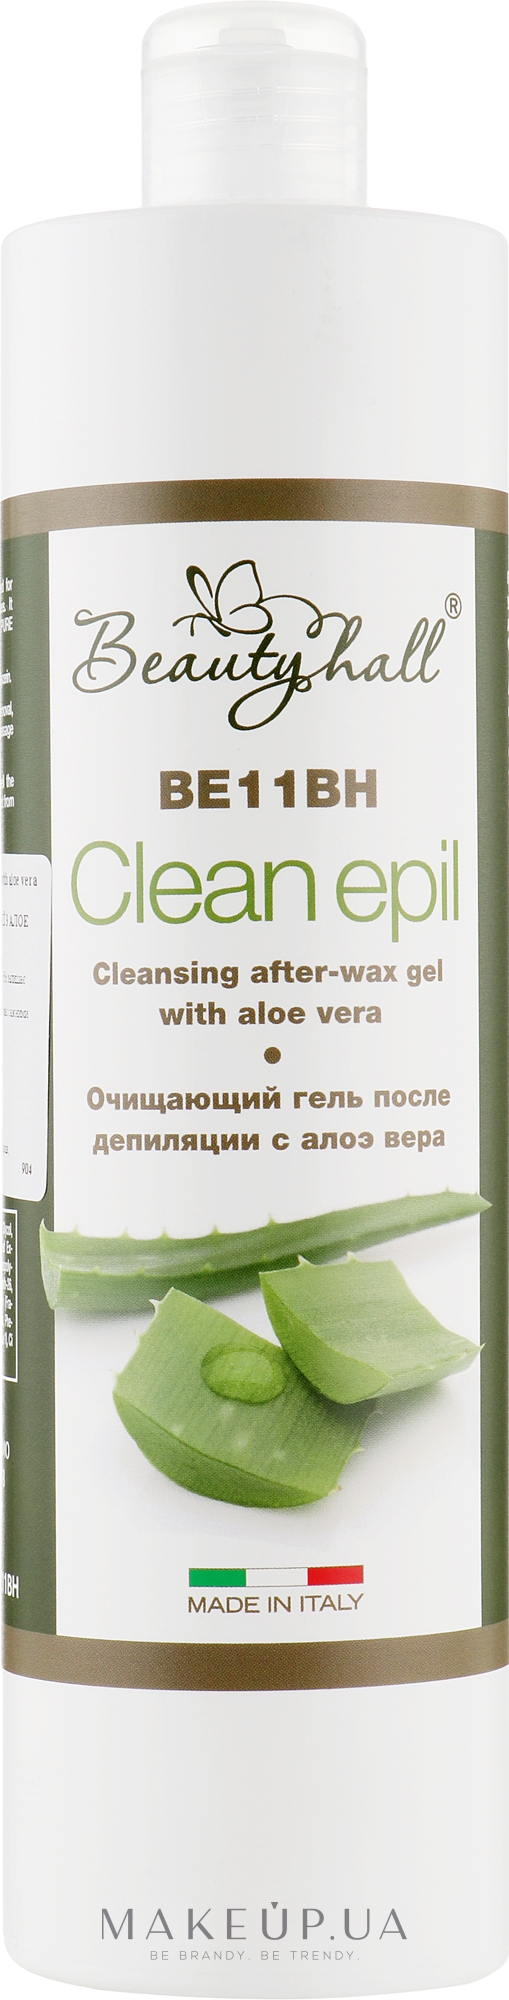 Очищувальний гель після депіляції з алое вера - Beautyhall Clean Epil Cleansing After-Wax Gel — фото 500ml